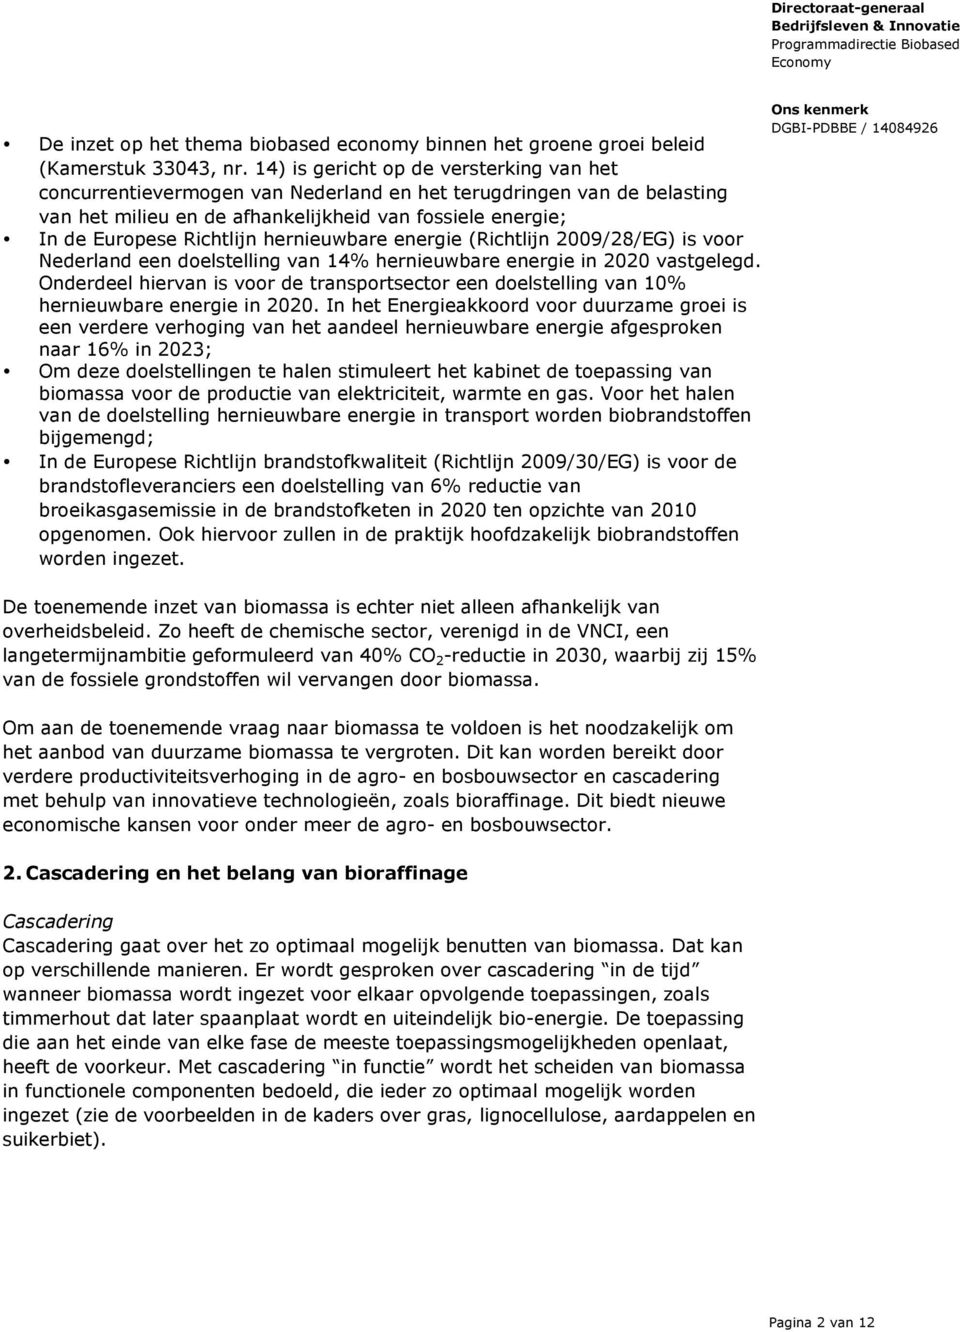 hernieuwbare energie (Richtlijn 2009/28/EG) is voor Nederland een doelstelling van 14% hernieuwbare energie in 2020 vastgelegd.